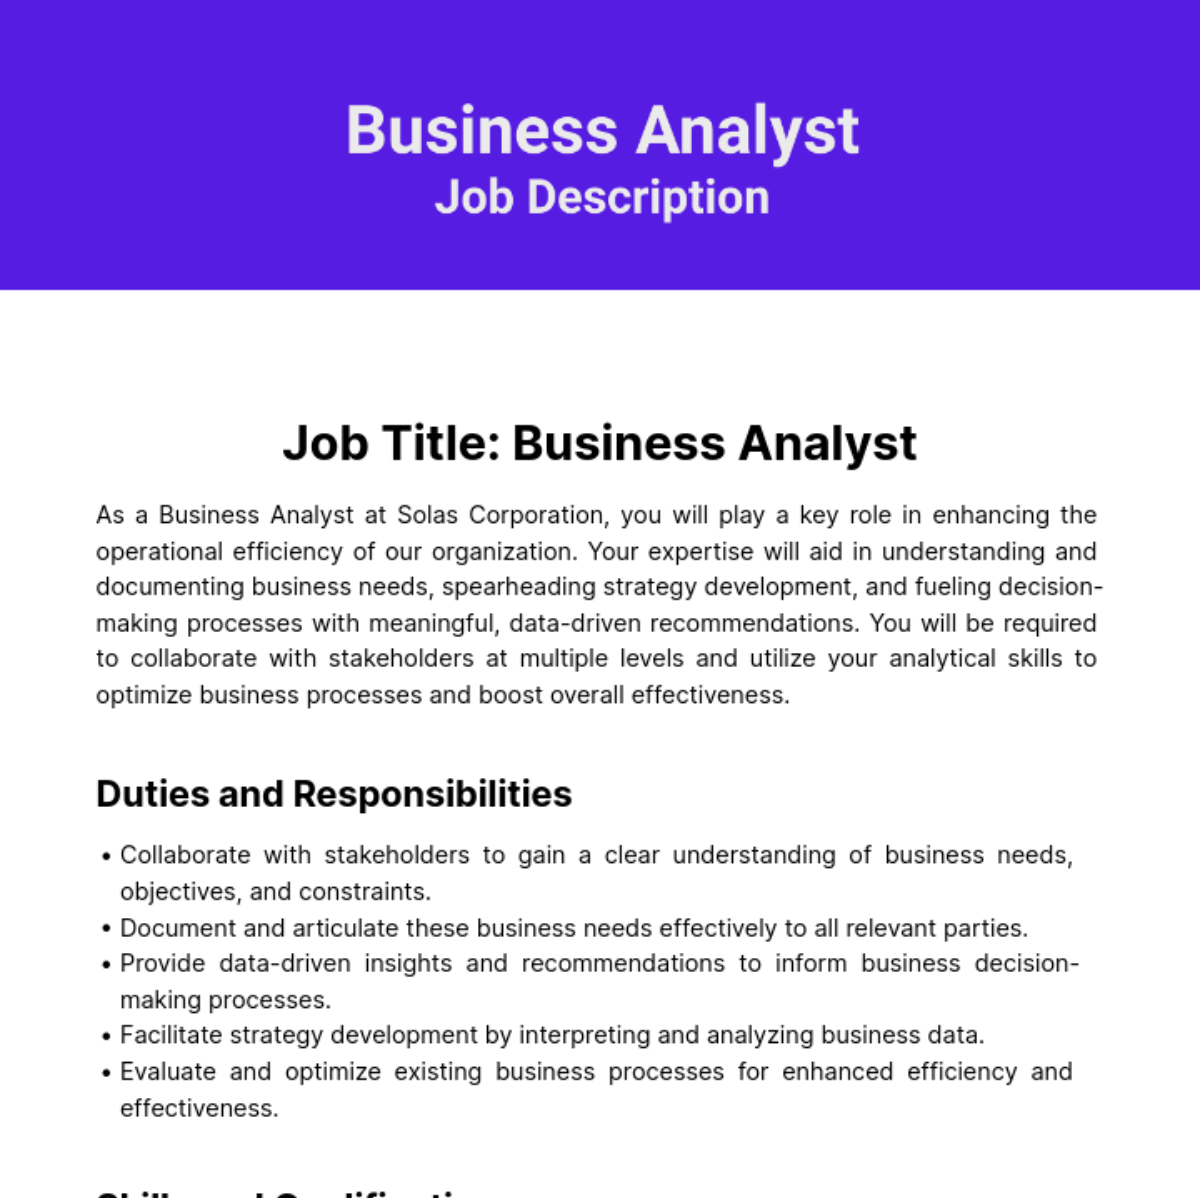 Business Analyst Job Description Template